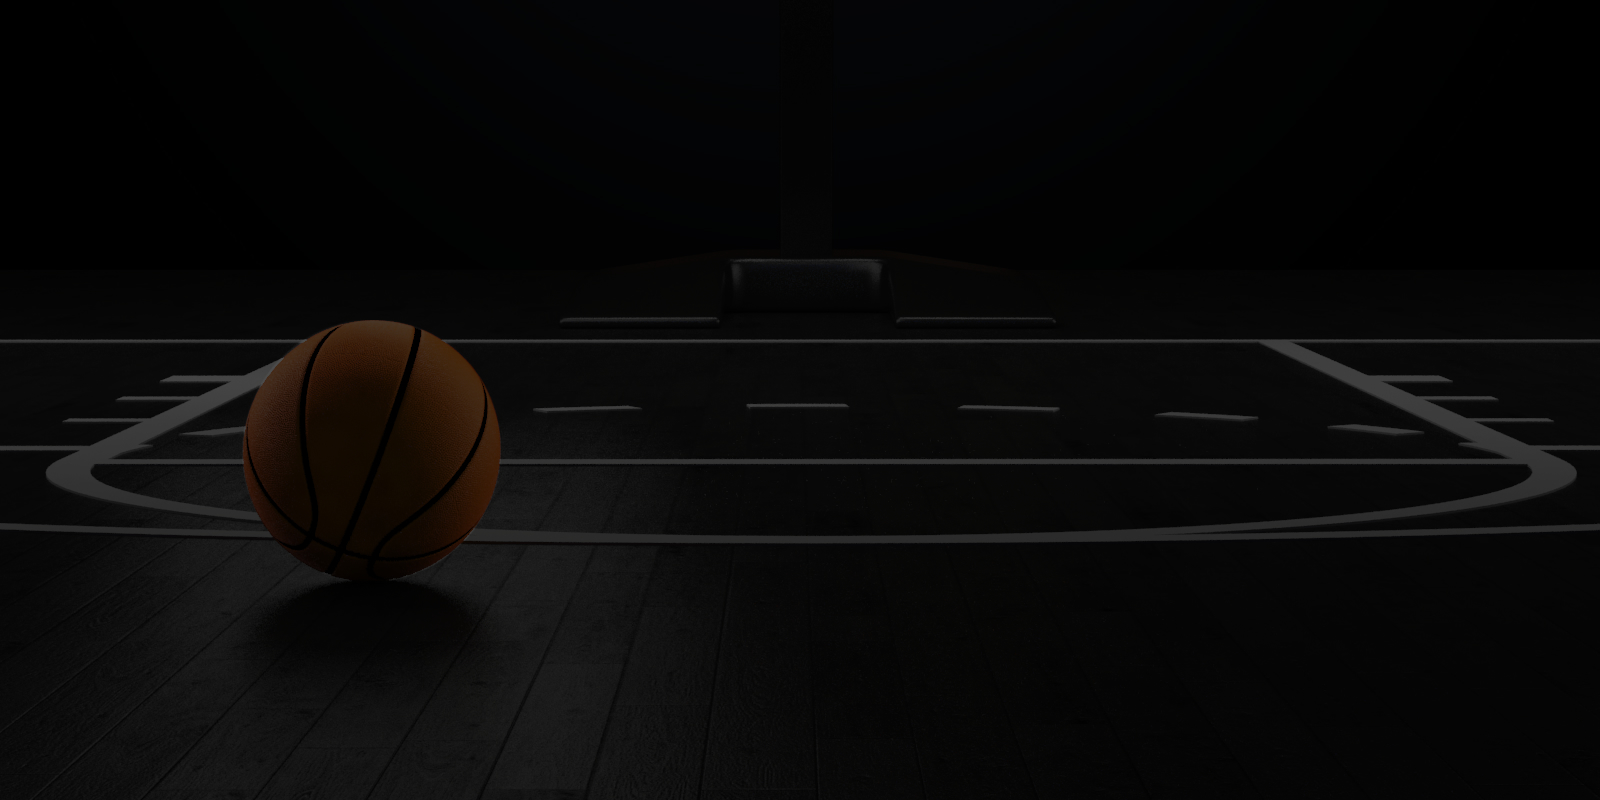 Pizarra baloncesto para Android - Descargar